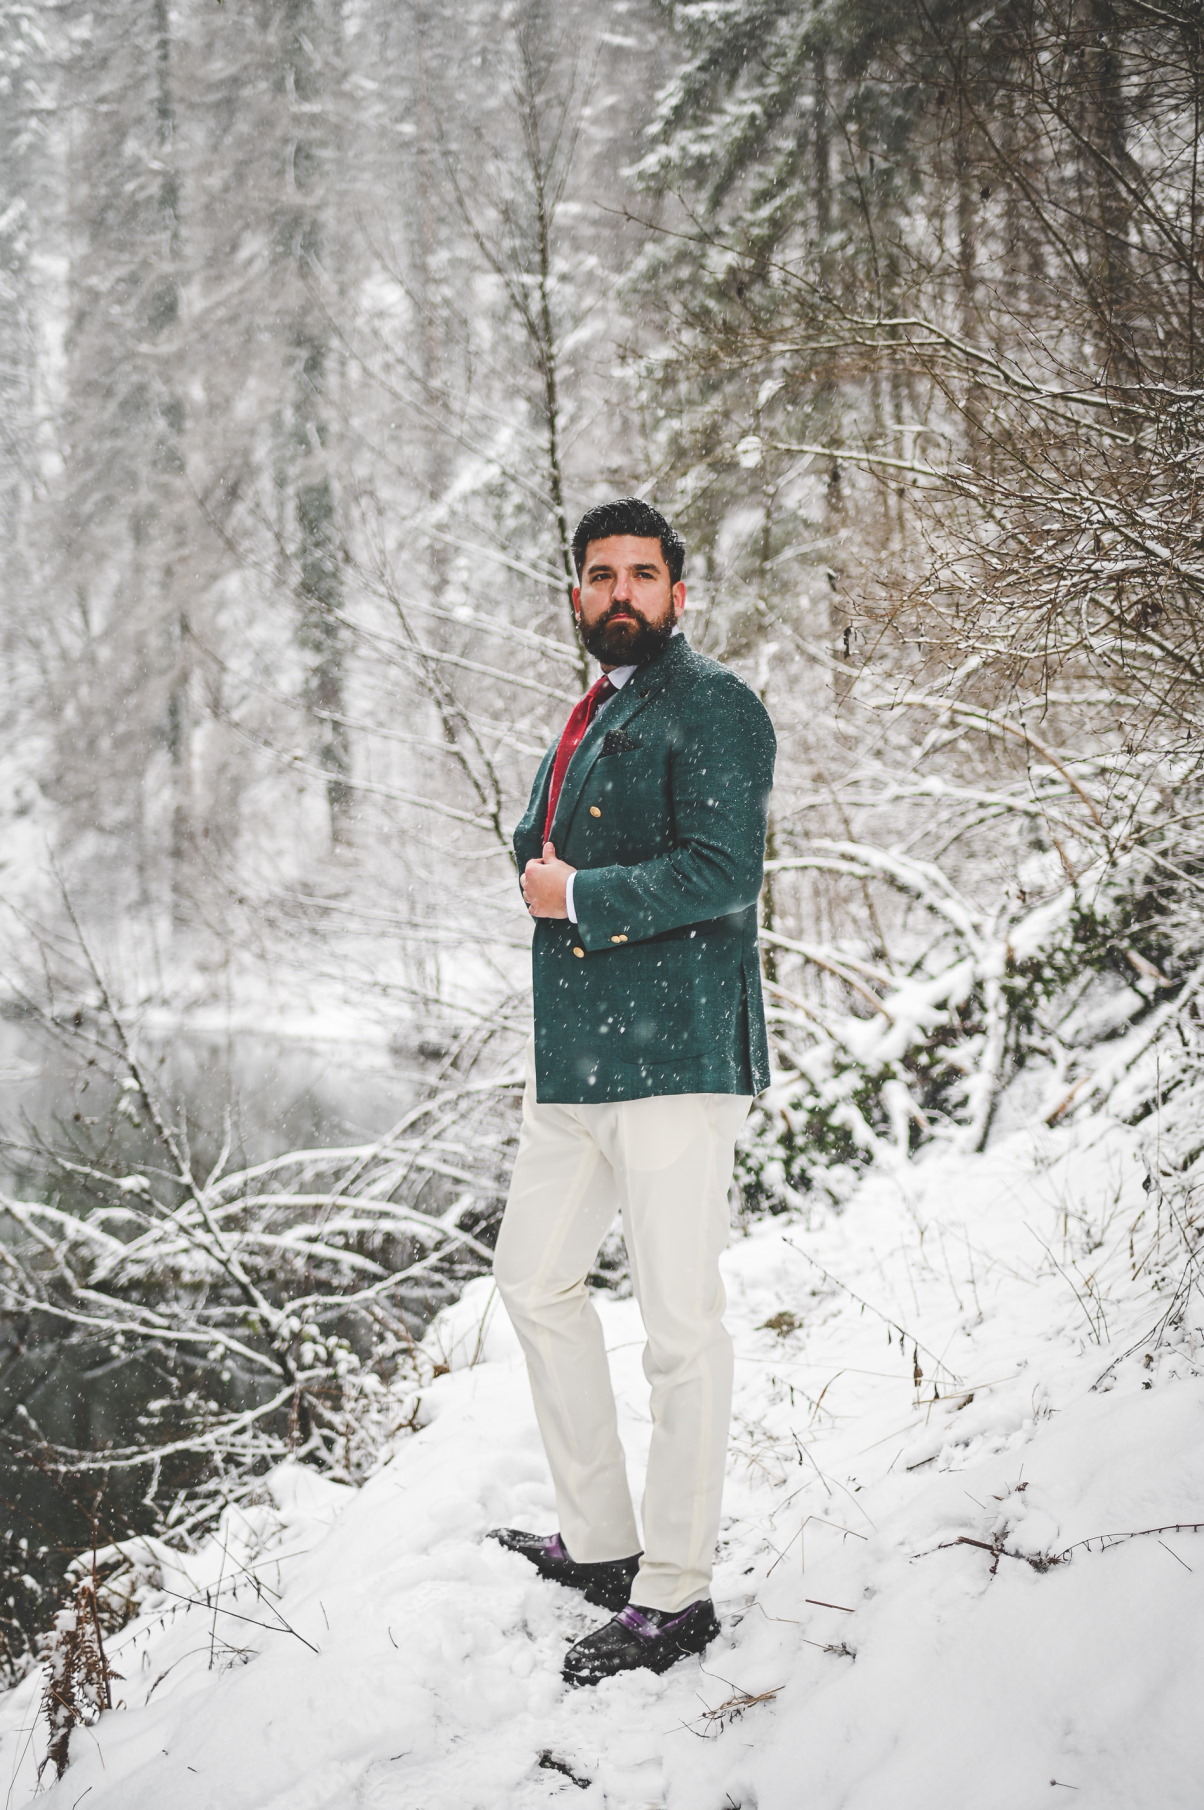 Fidelio Tailored Clothing nas uvodi u bajkovitu snježnu kampanju!